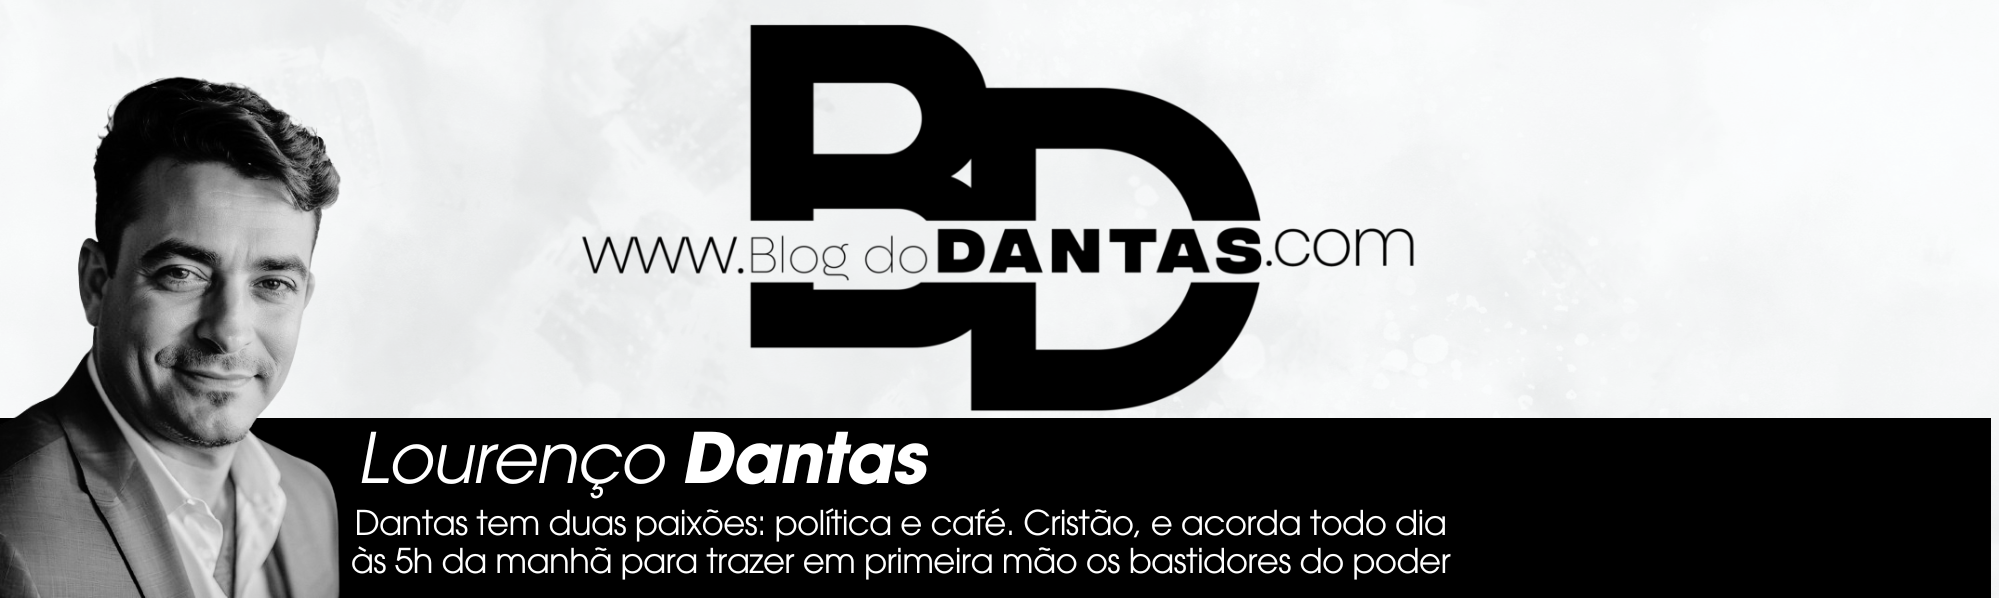 Blog do Dantas